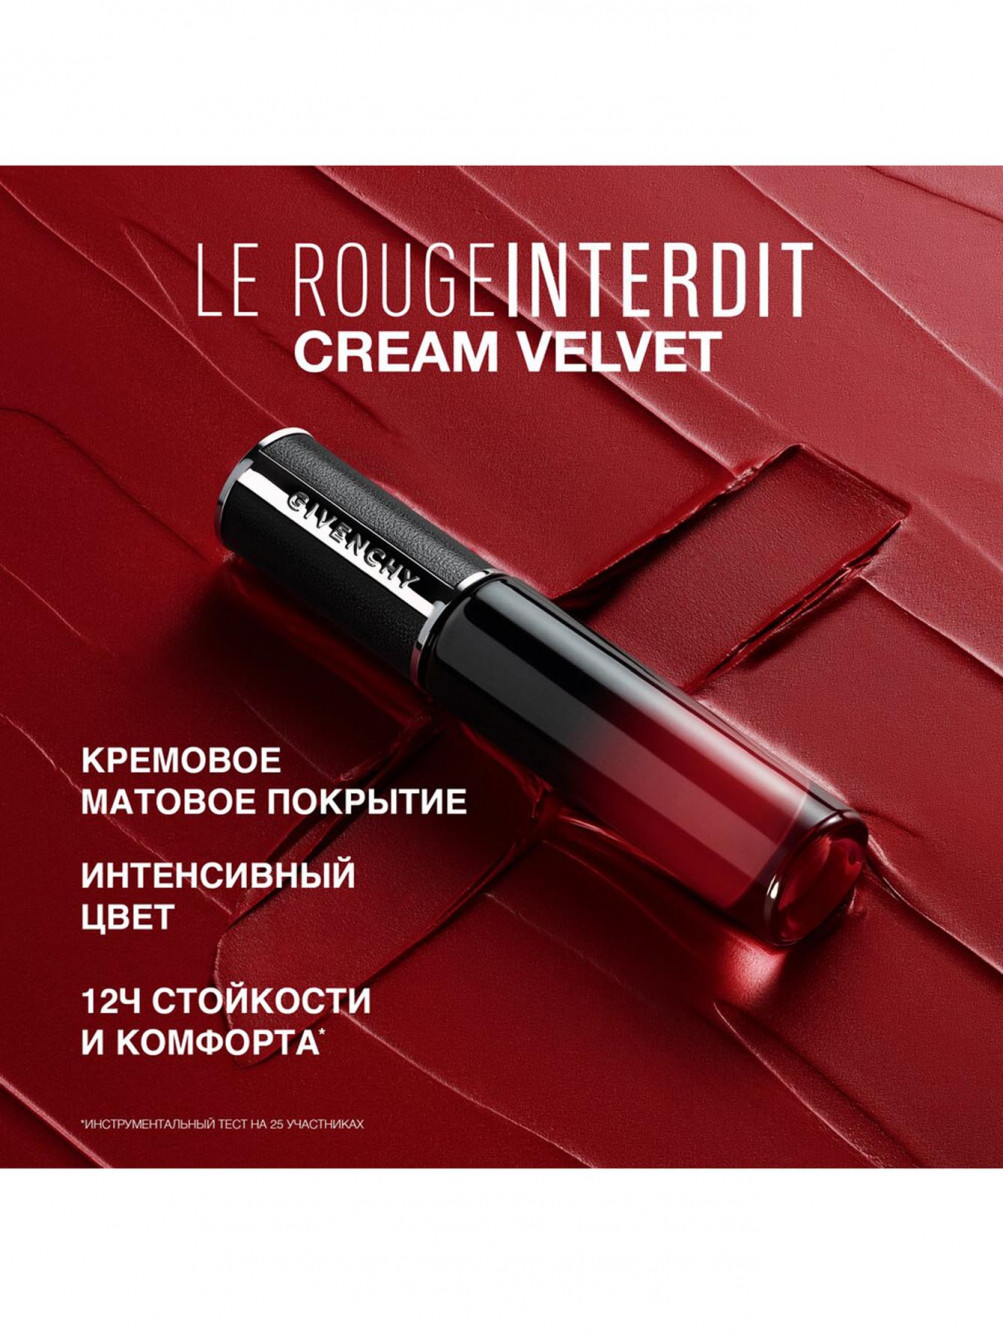 Жидкая матовая помада для губ Le Rouge Interdit Cream Velvet, оттенок 51, 6,5 мл - Обтравка4